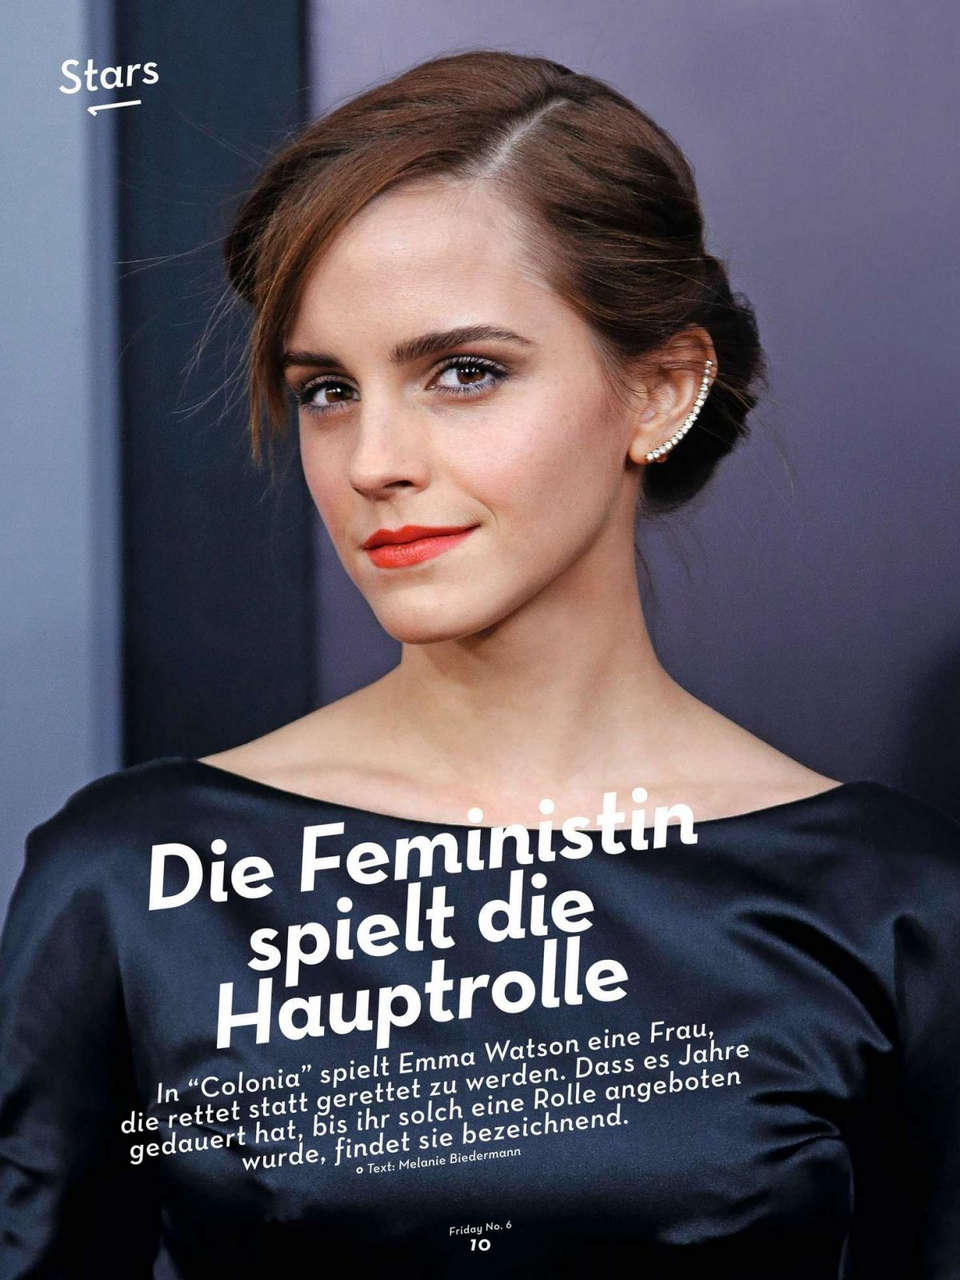 Emma Watson 20 Minuten Friday No 6 February 2016 Issue